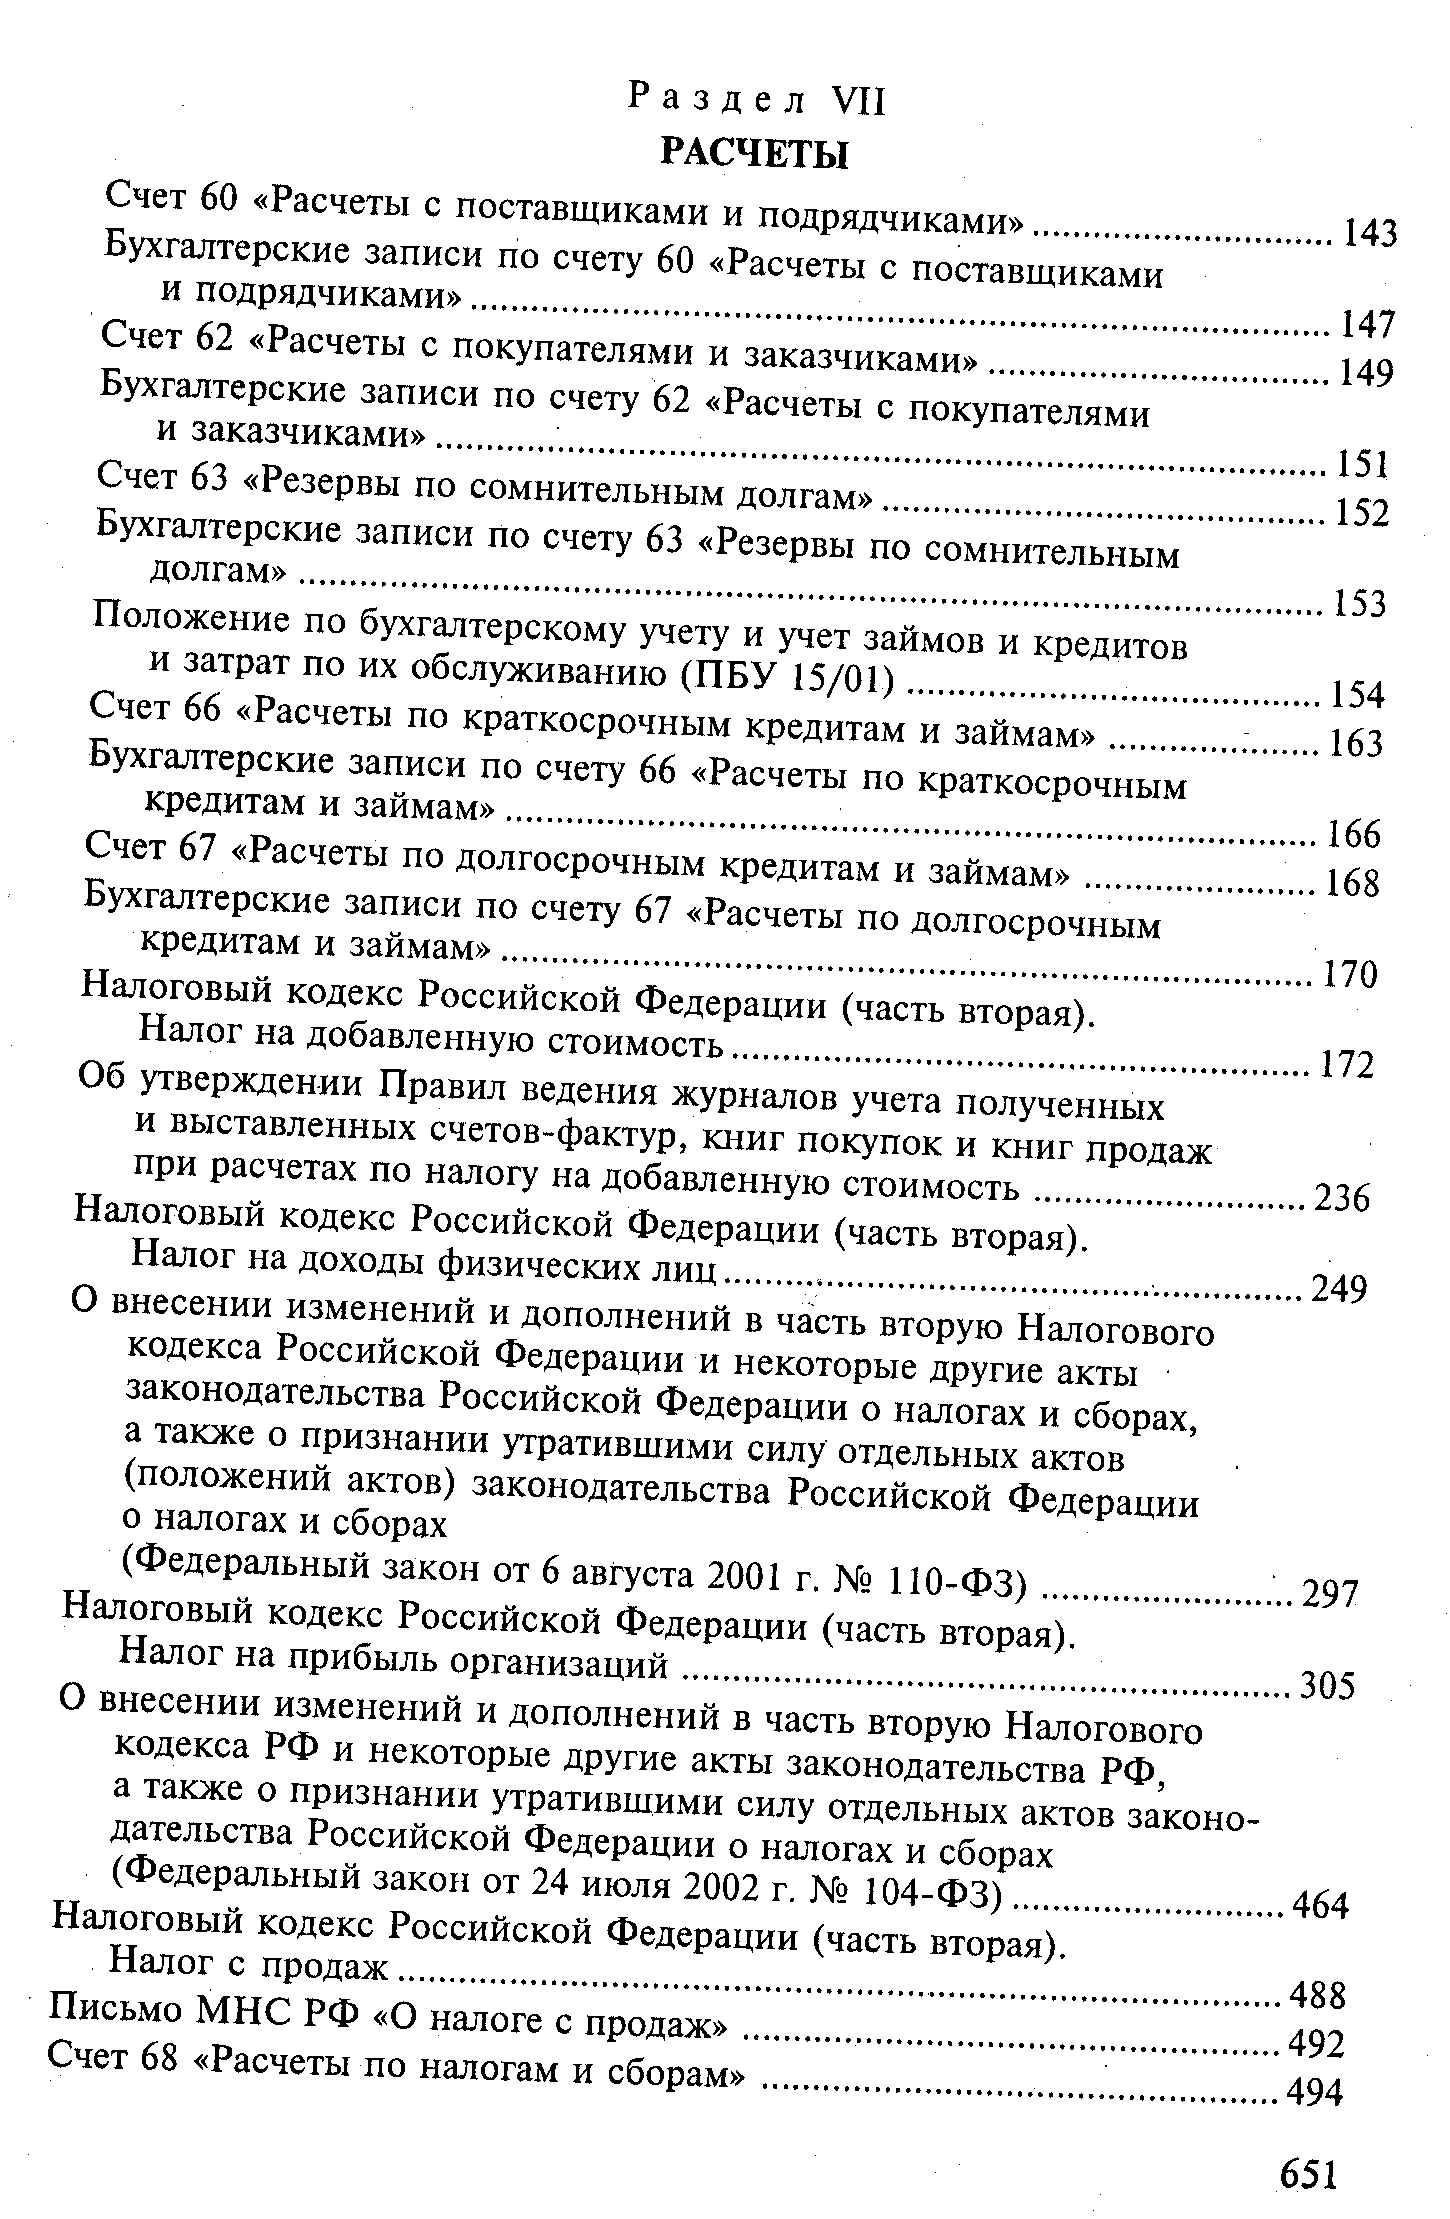 Налоговый кодекс Российской Федерации (часть вторая).
